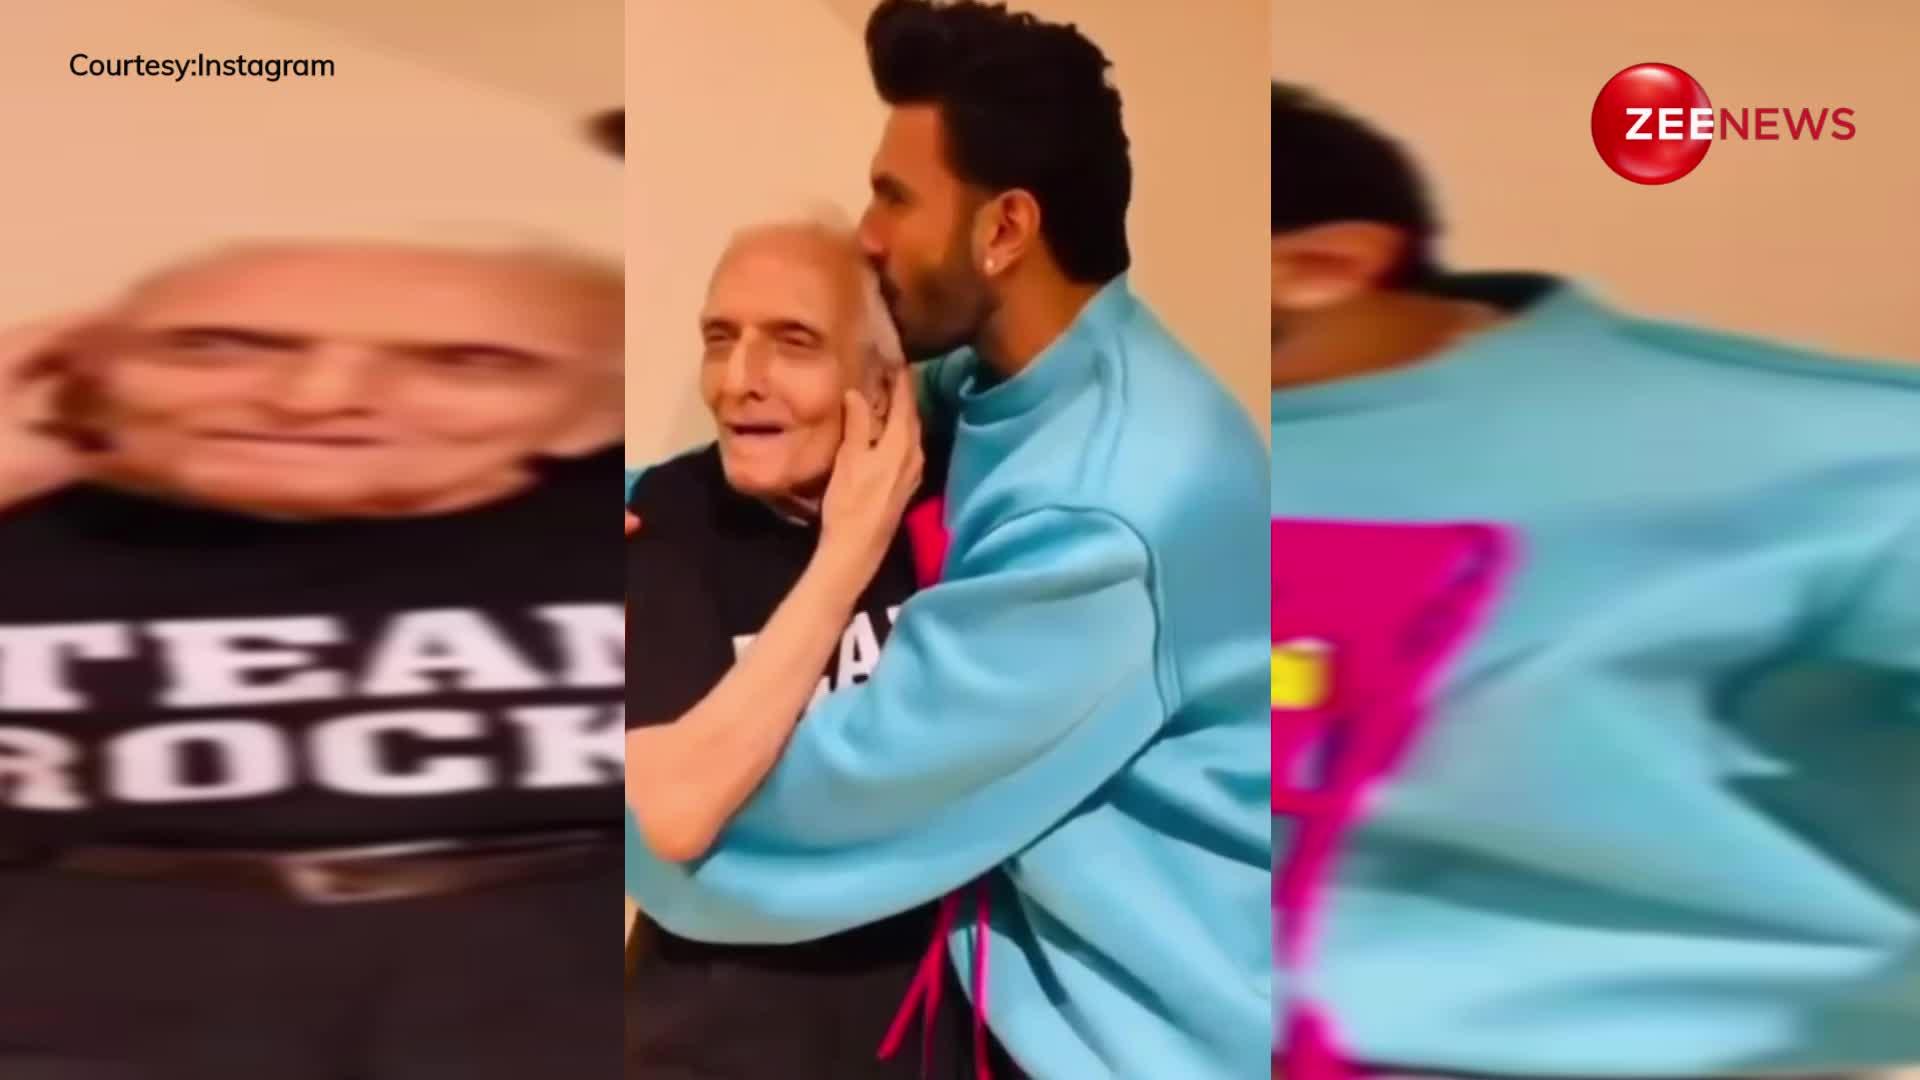 Ranveer singh ने 93 साल के दादा के साथ किया झुमका गिरा रे गाने पर डांस, दिल जीत लेगा वीडियो